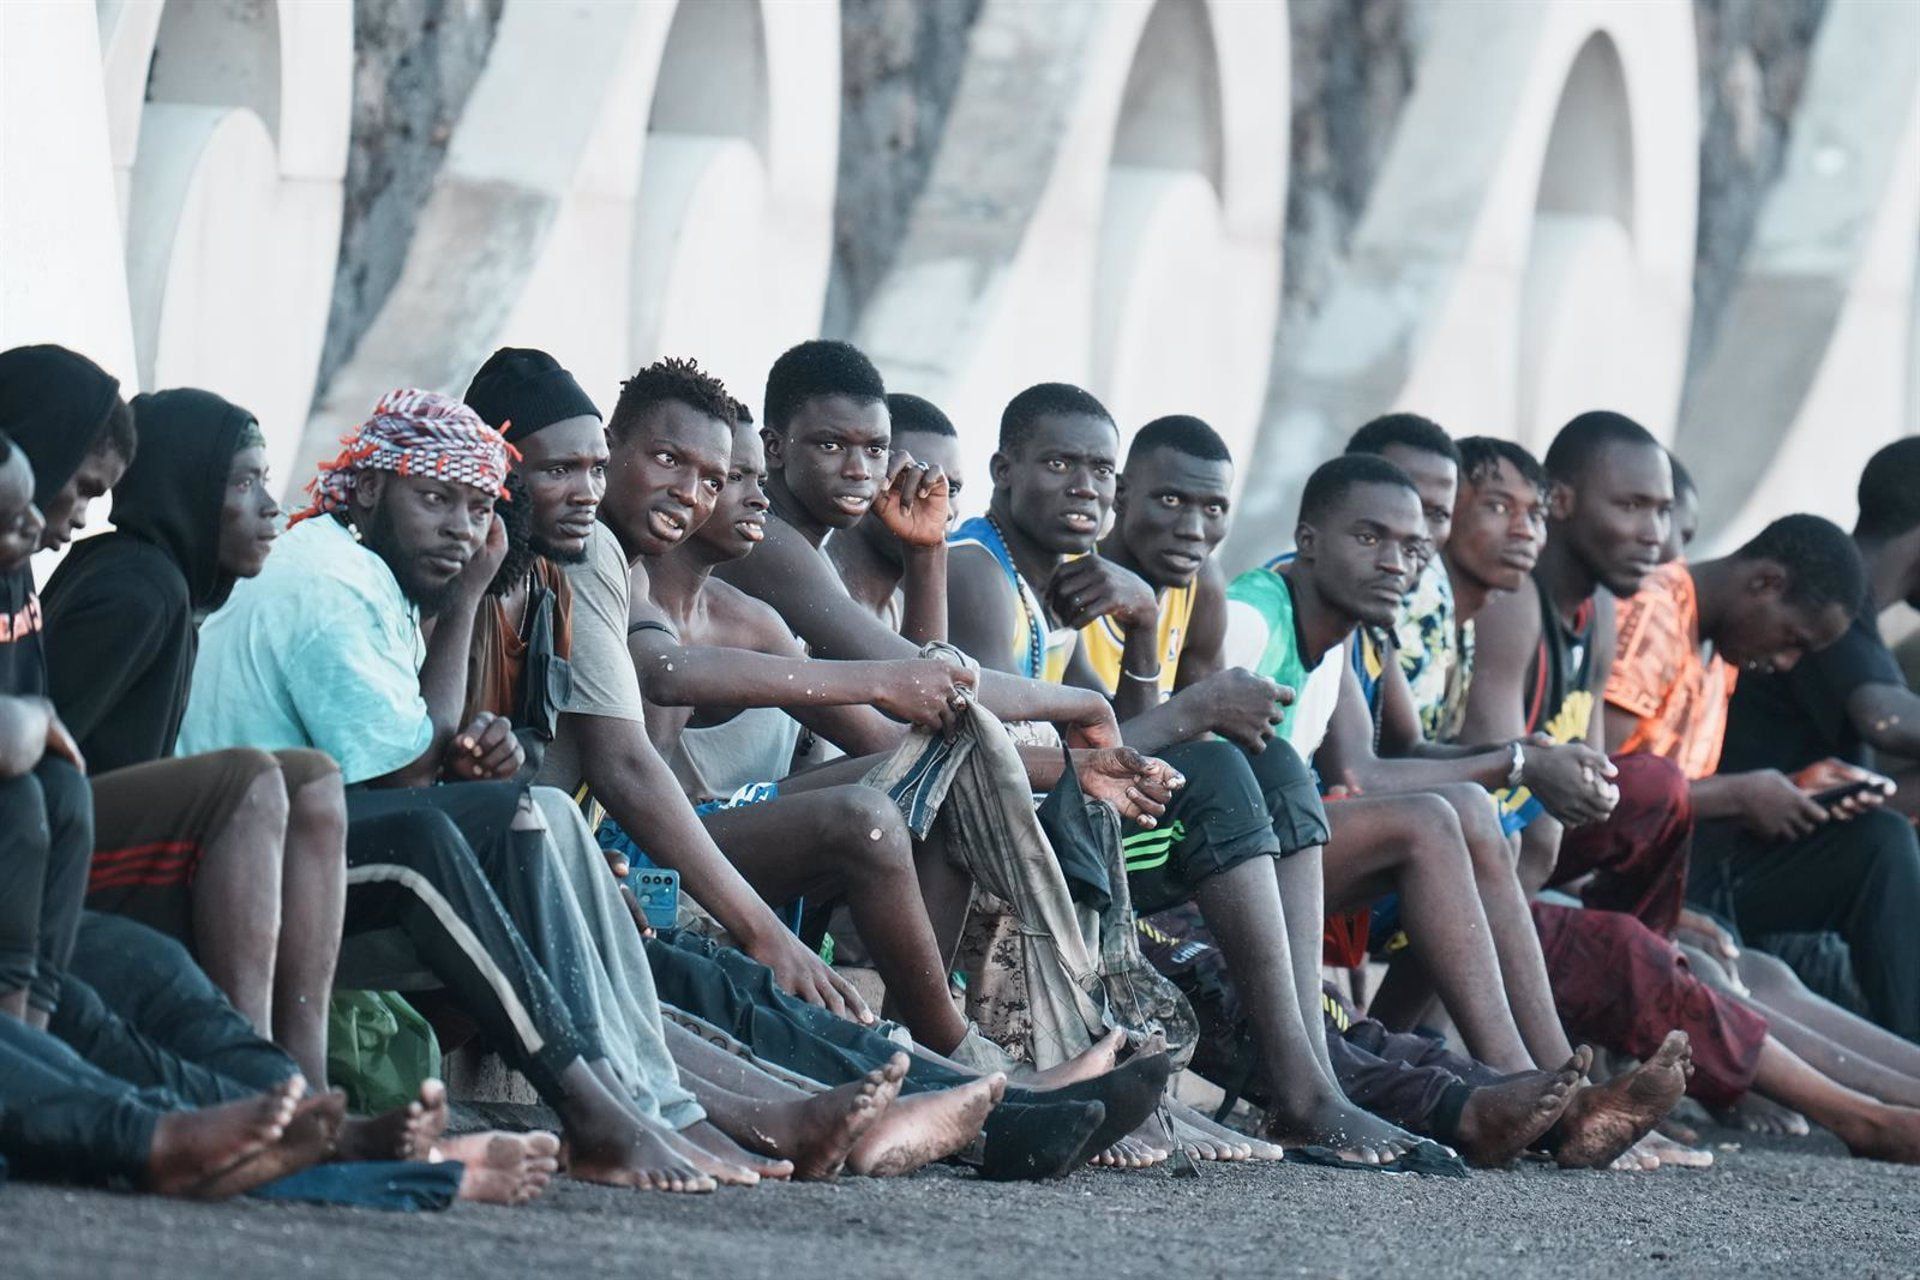 Llegan 198 migrantes a Canarias a bordo de tres embarcaciones en las últimas horas